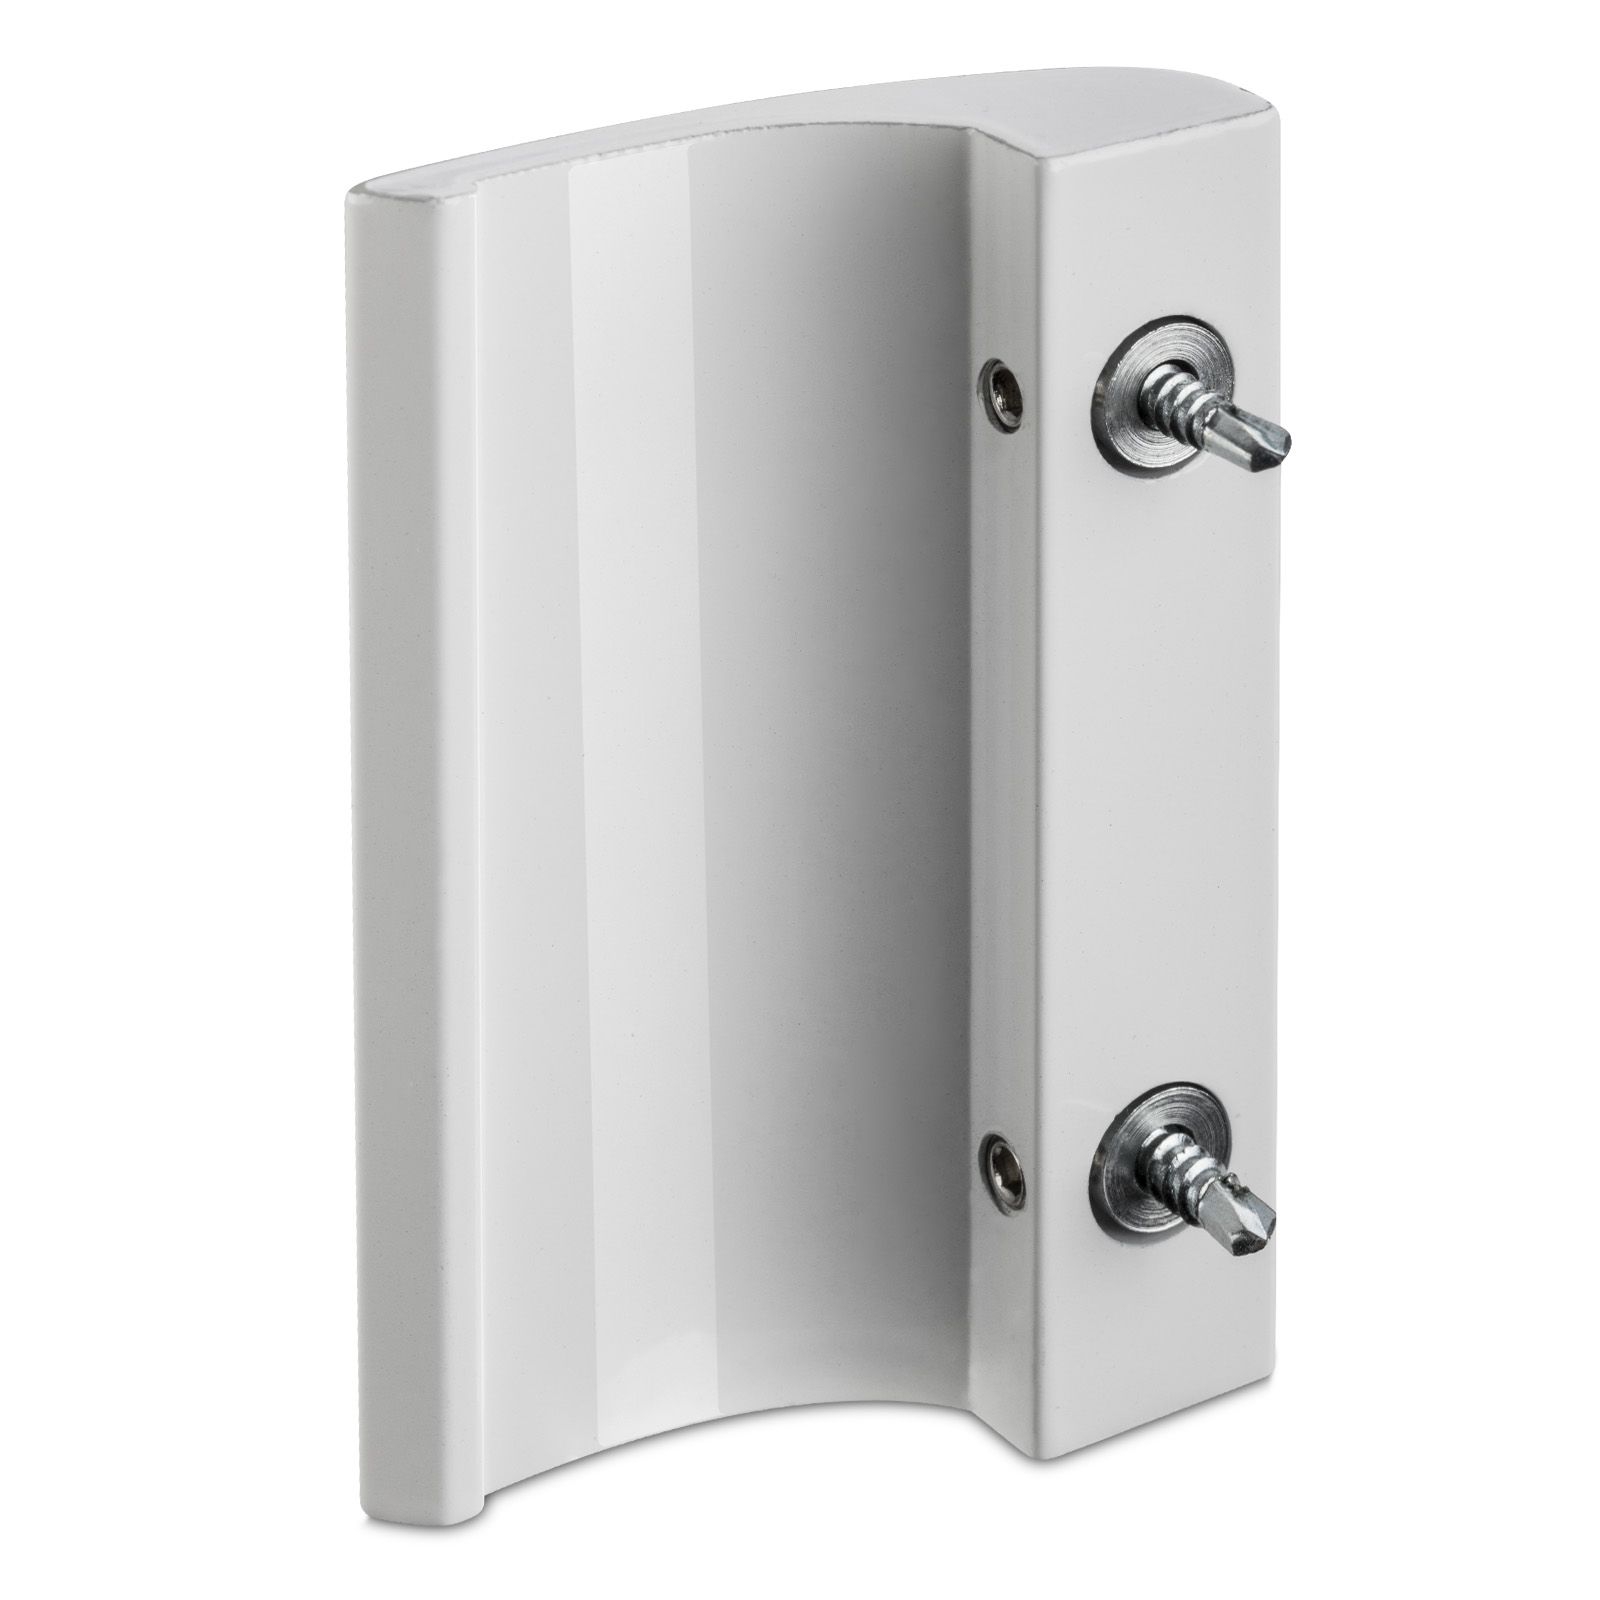 Tirador estable FH para puerta de balcón – Asa para puerta de balcón en aluminio 